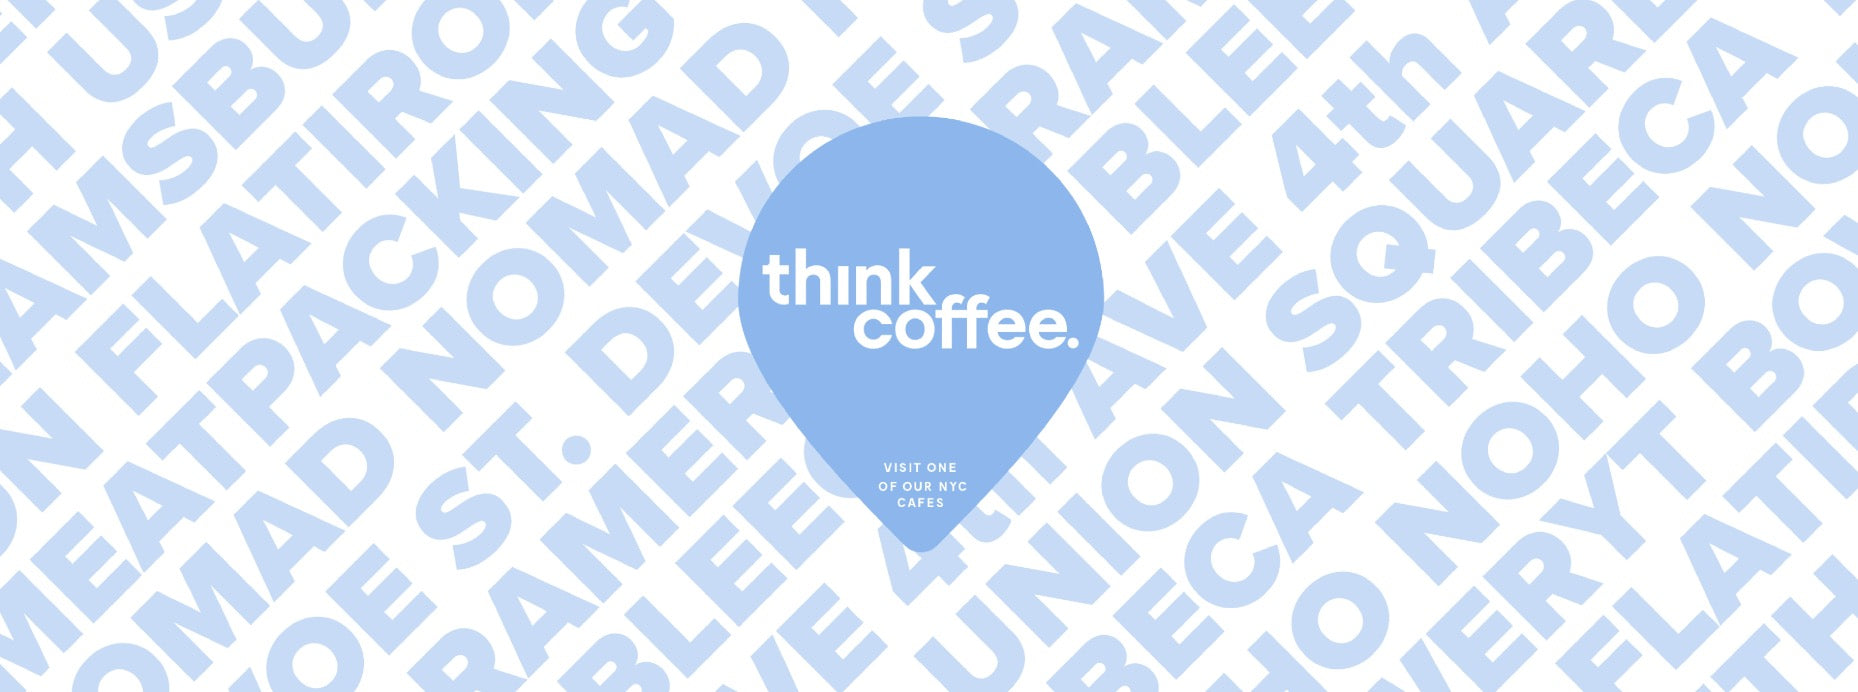 Think Coffee NYC